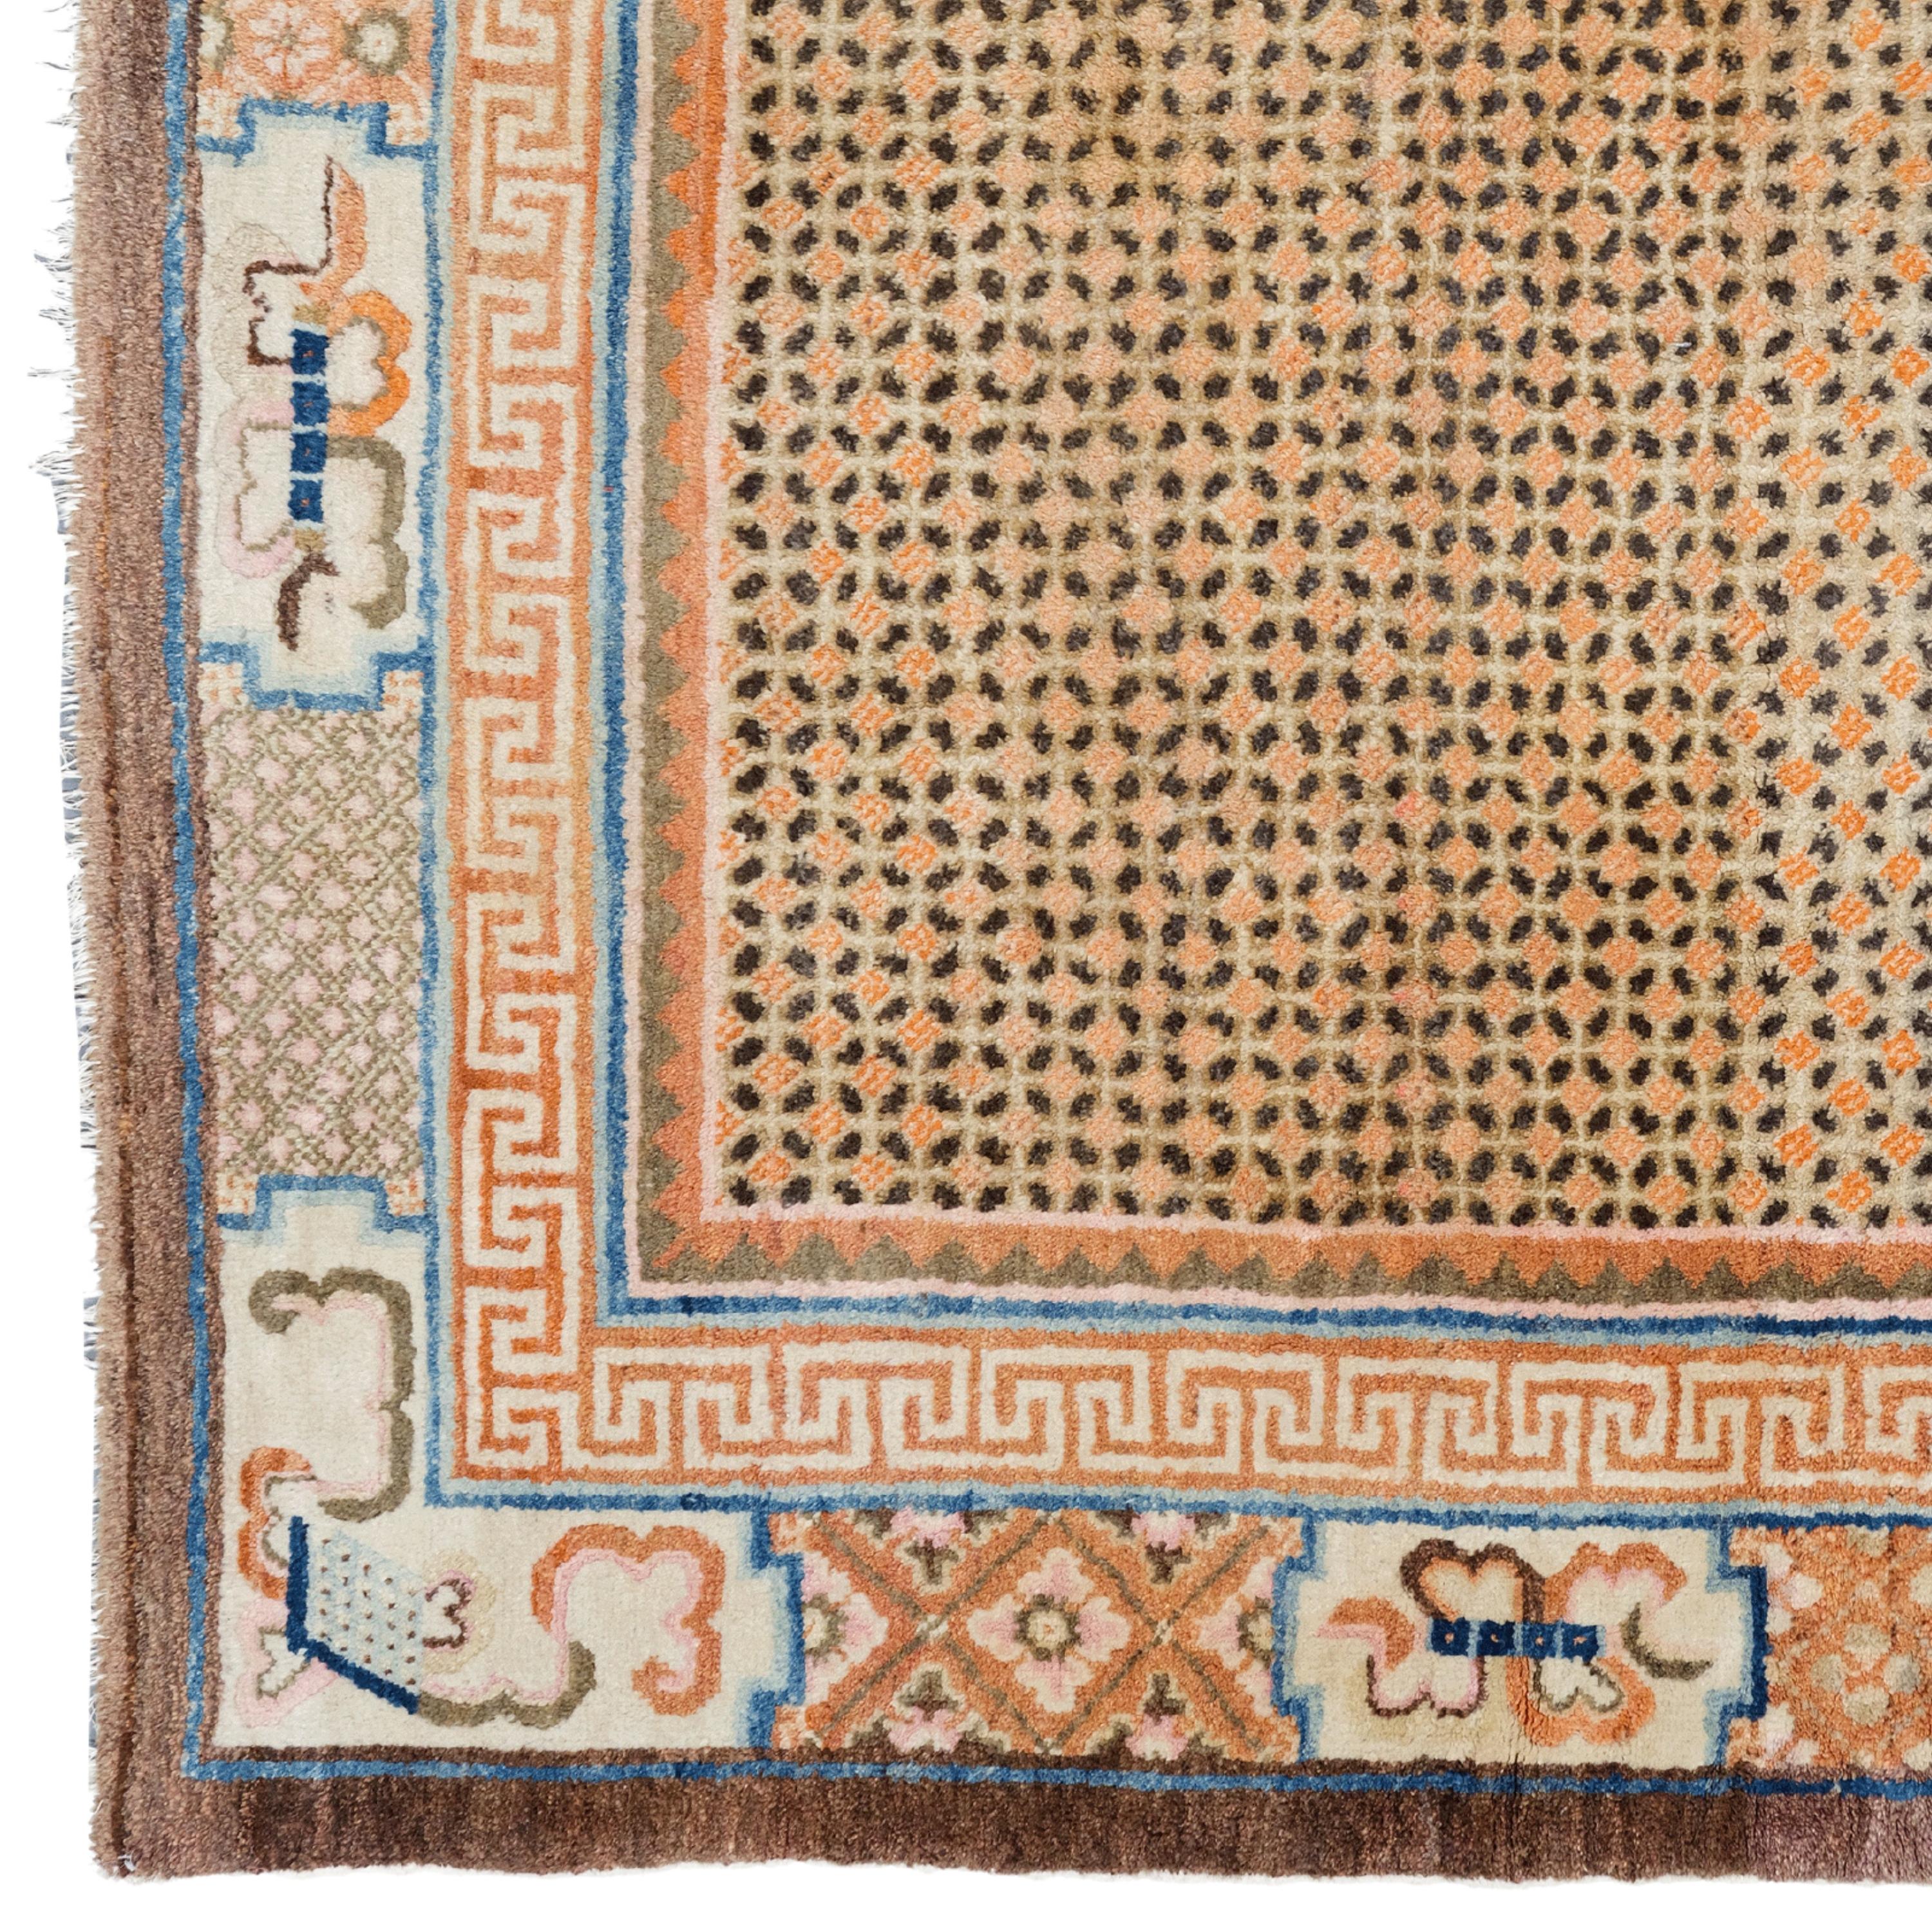 Antiker chinesischer Teppich  Antiker Asia-Teppich
Ein historisches Kunstwerk Chinesischer Teppich aus dem 19.
Größe: 159x235 cm

Wenn Sie Ihr Zuhause oder Ihr Büro mit Eleganz und Eleganz ausstatten möchten, ist dieser chinesische Teppich aus dem